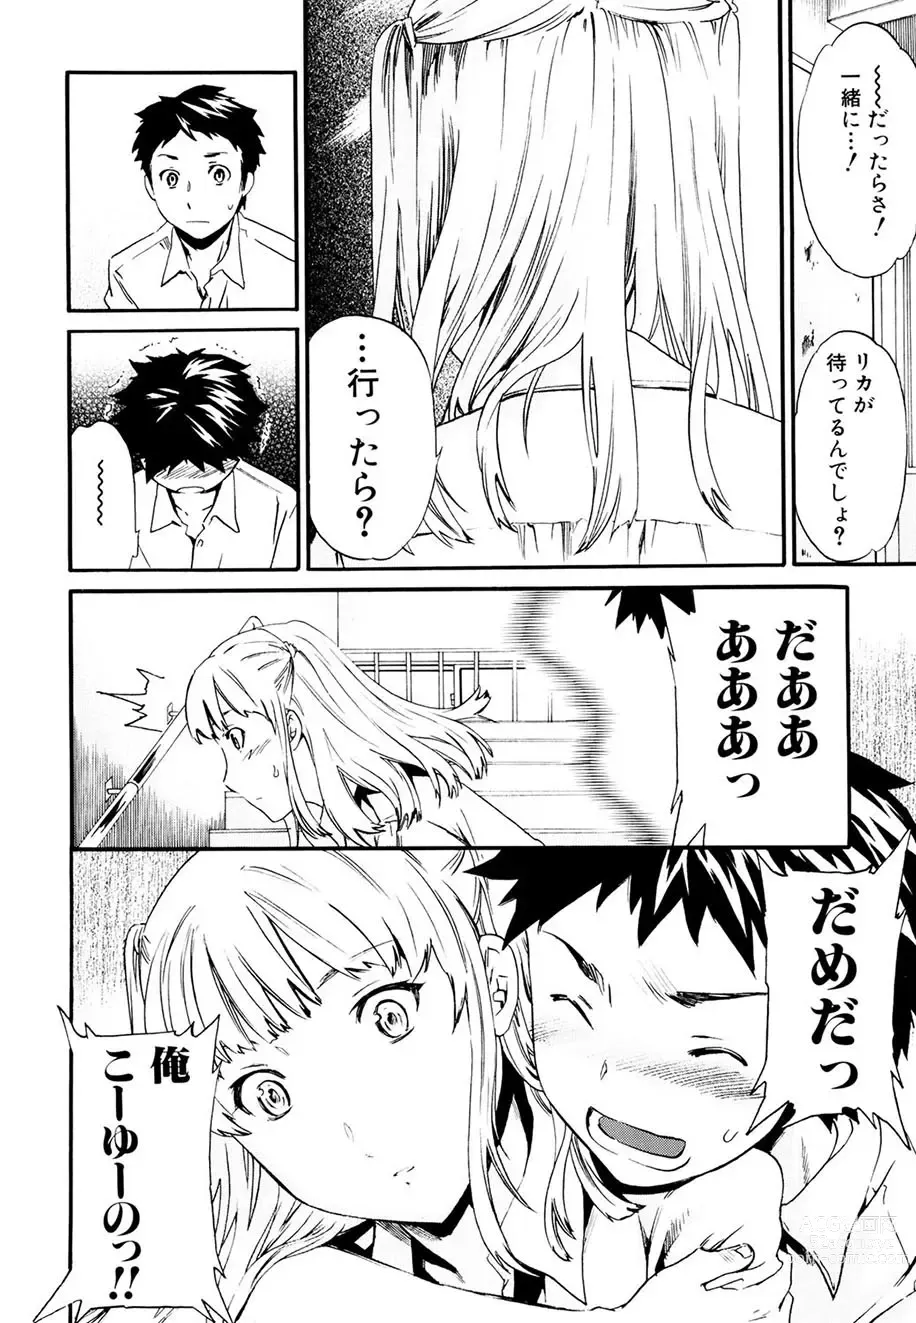 Page 135 of manga Shitai Kara Suru no